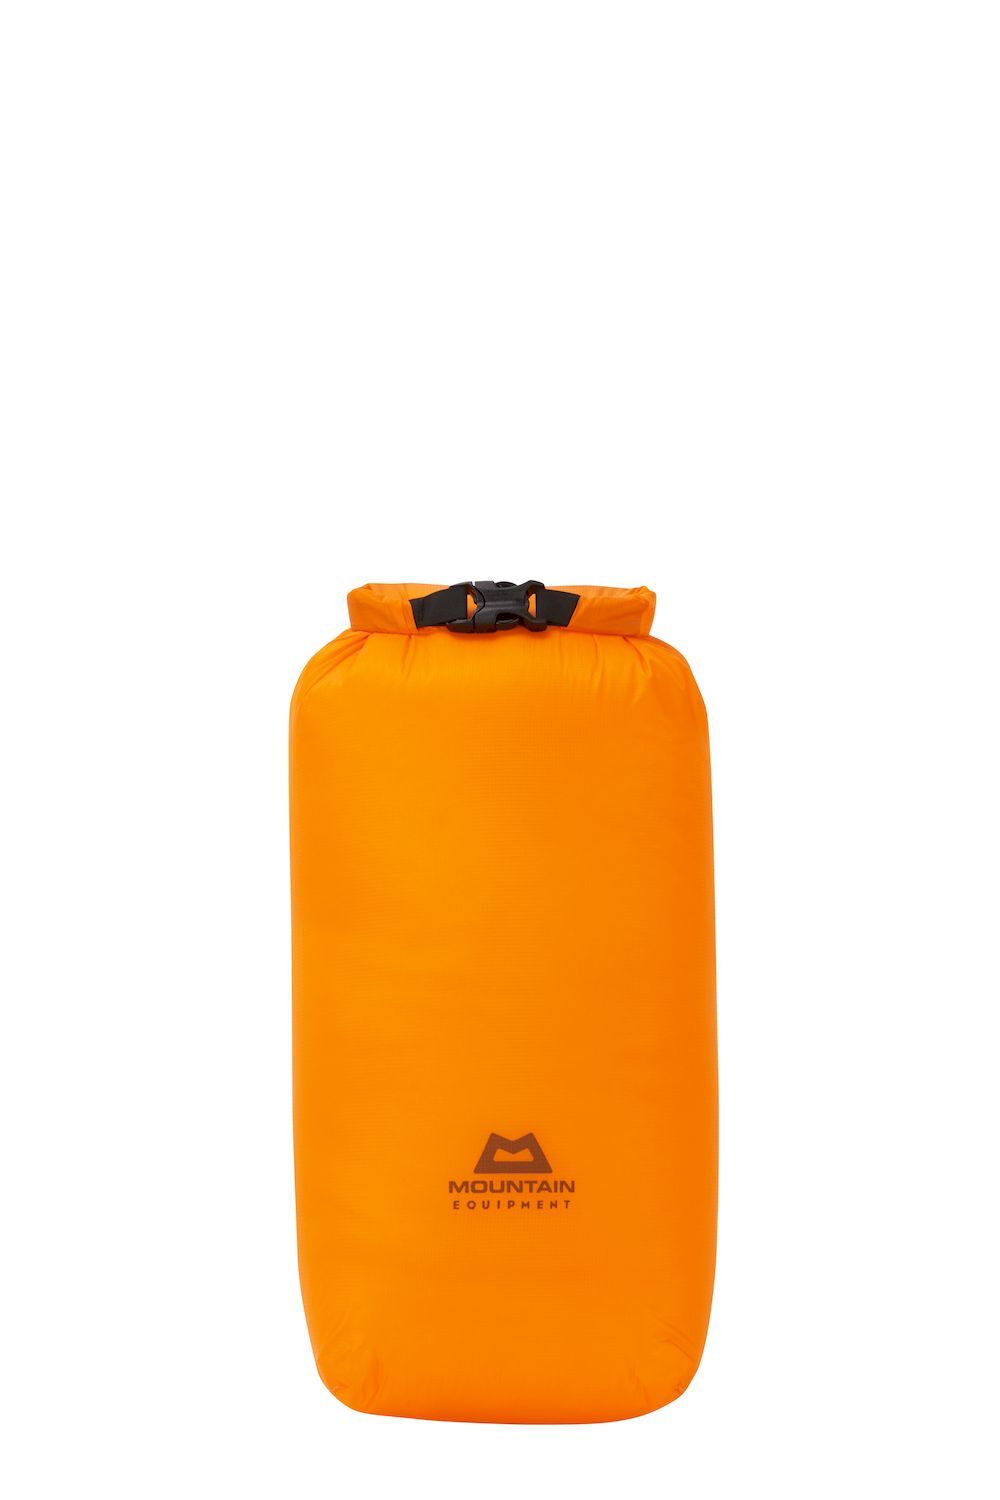 Mountain Equipment Lightweight Drybag 5L - Borsa impermeabile